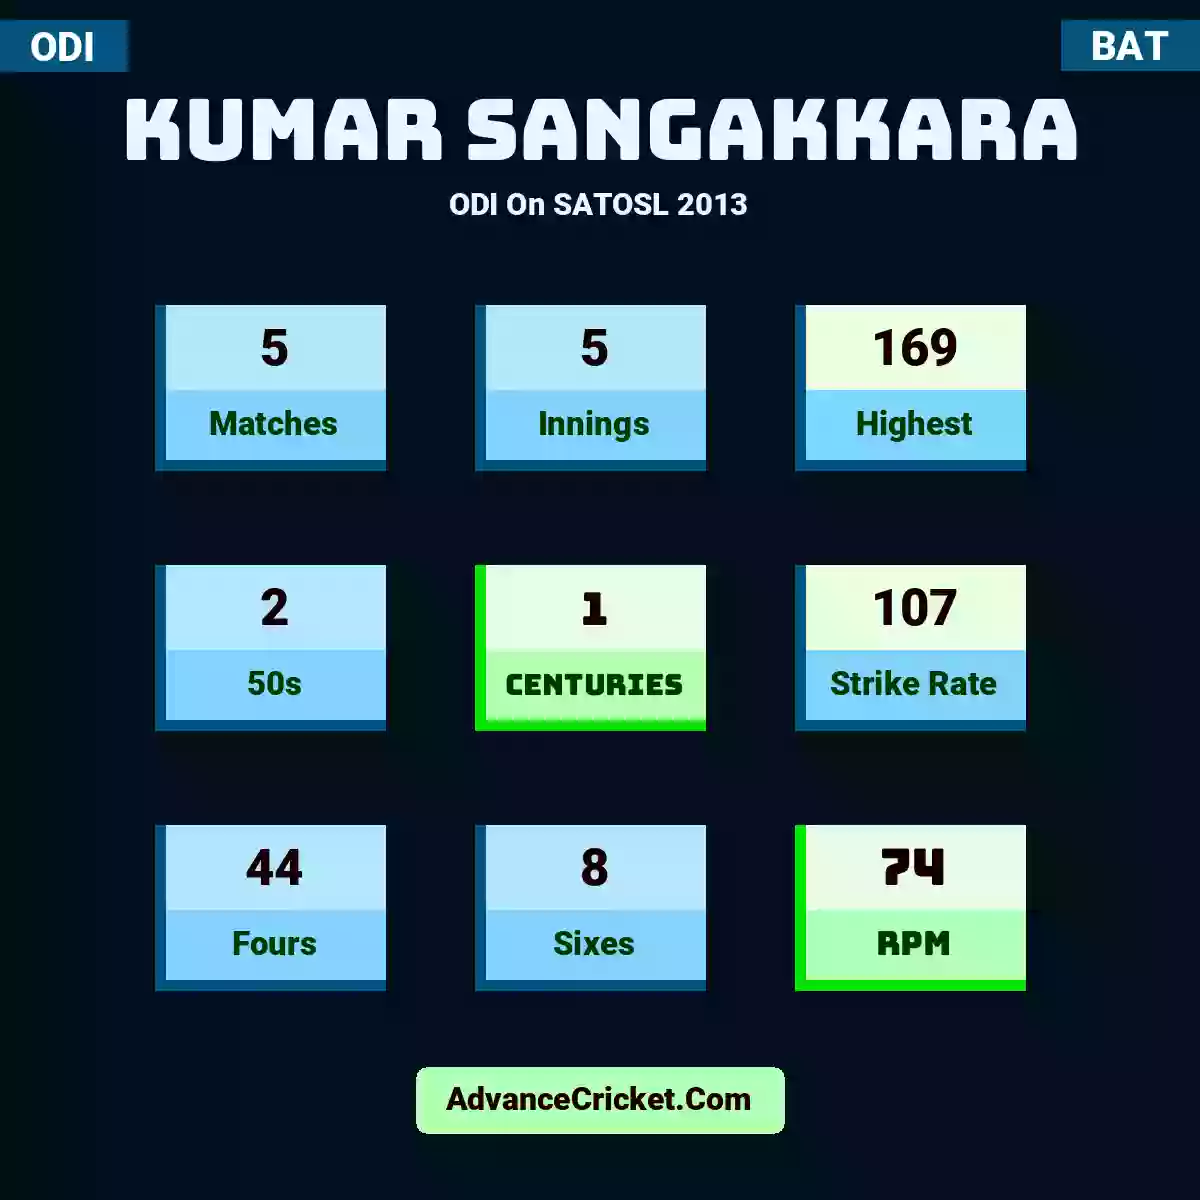 Kumar Sangakkara ODI  On SATOSL 2013, Kumar Sangakkara played 5 matches, scored 169 runs as highest, 2 half-centuries, and 1 centuries, with a strike rate of 107. K.Sangakkara hit 44 fours and 8 sixes, with an RPM of 74.